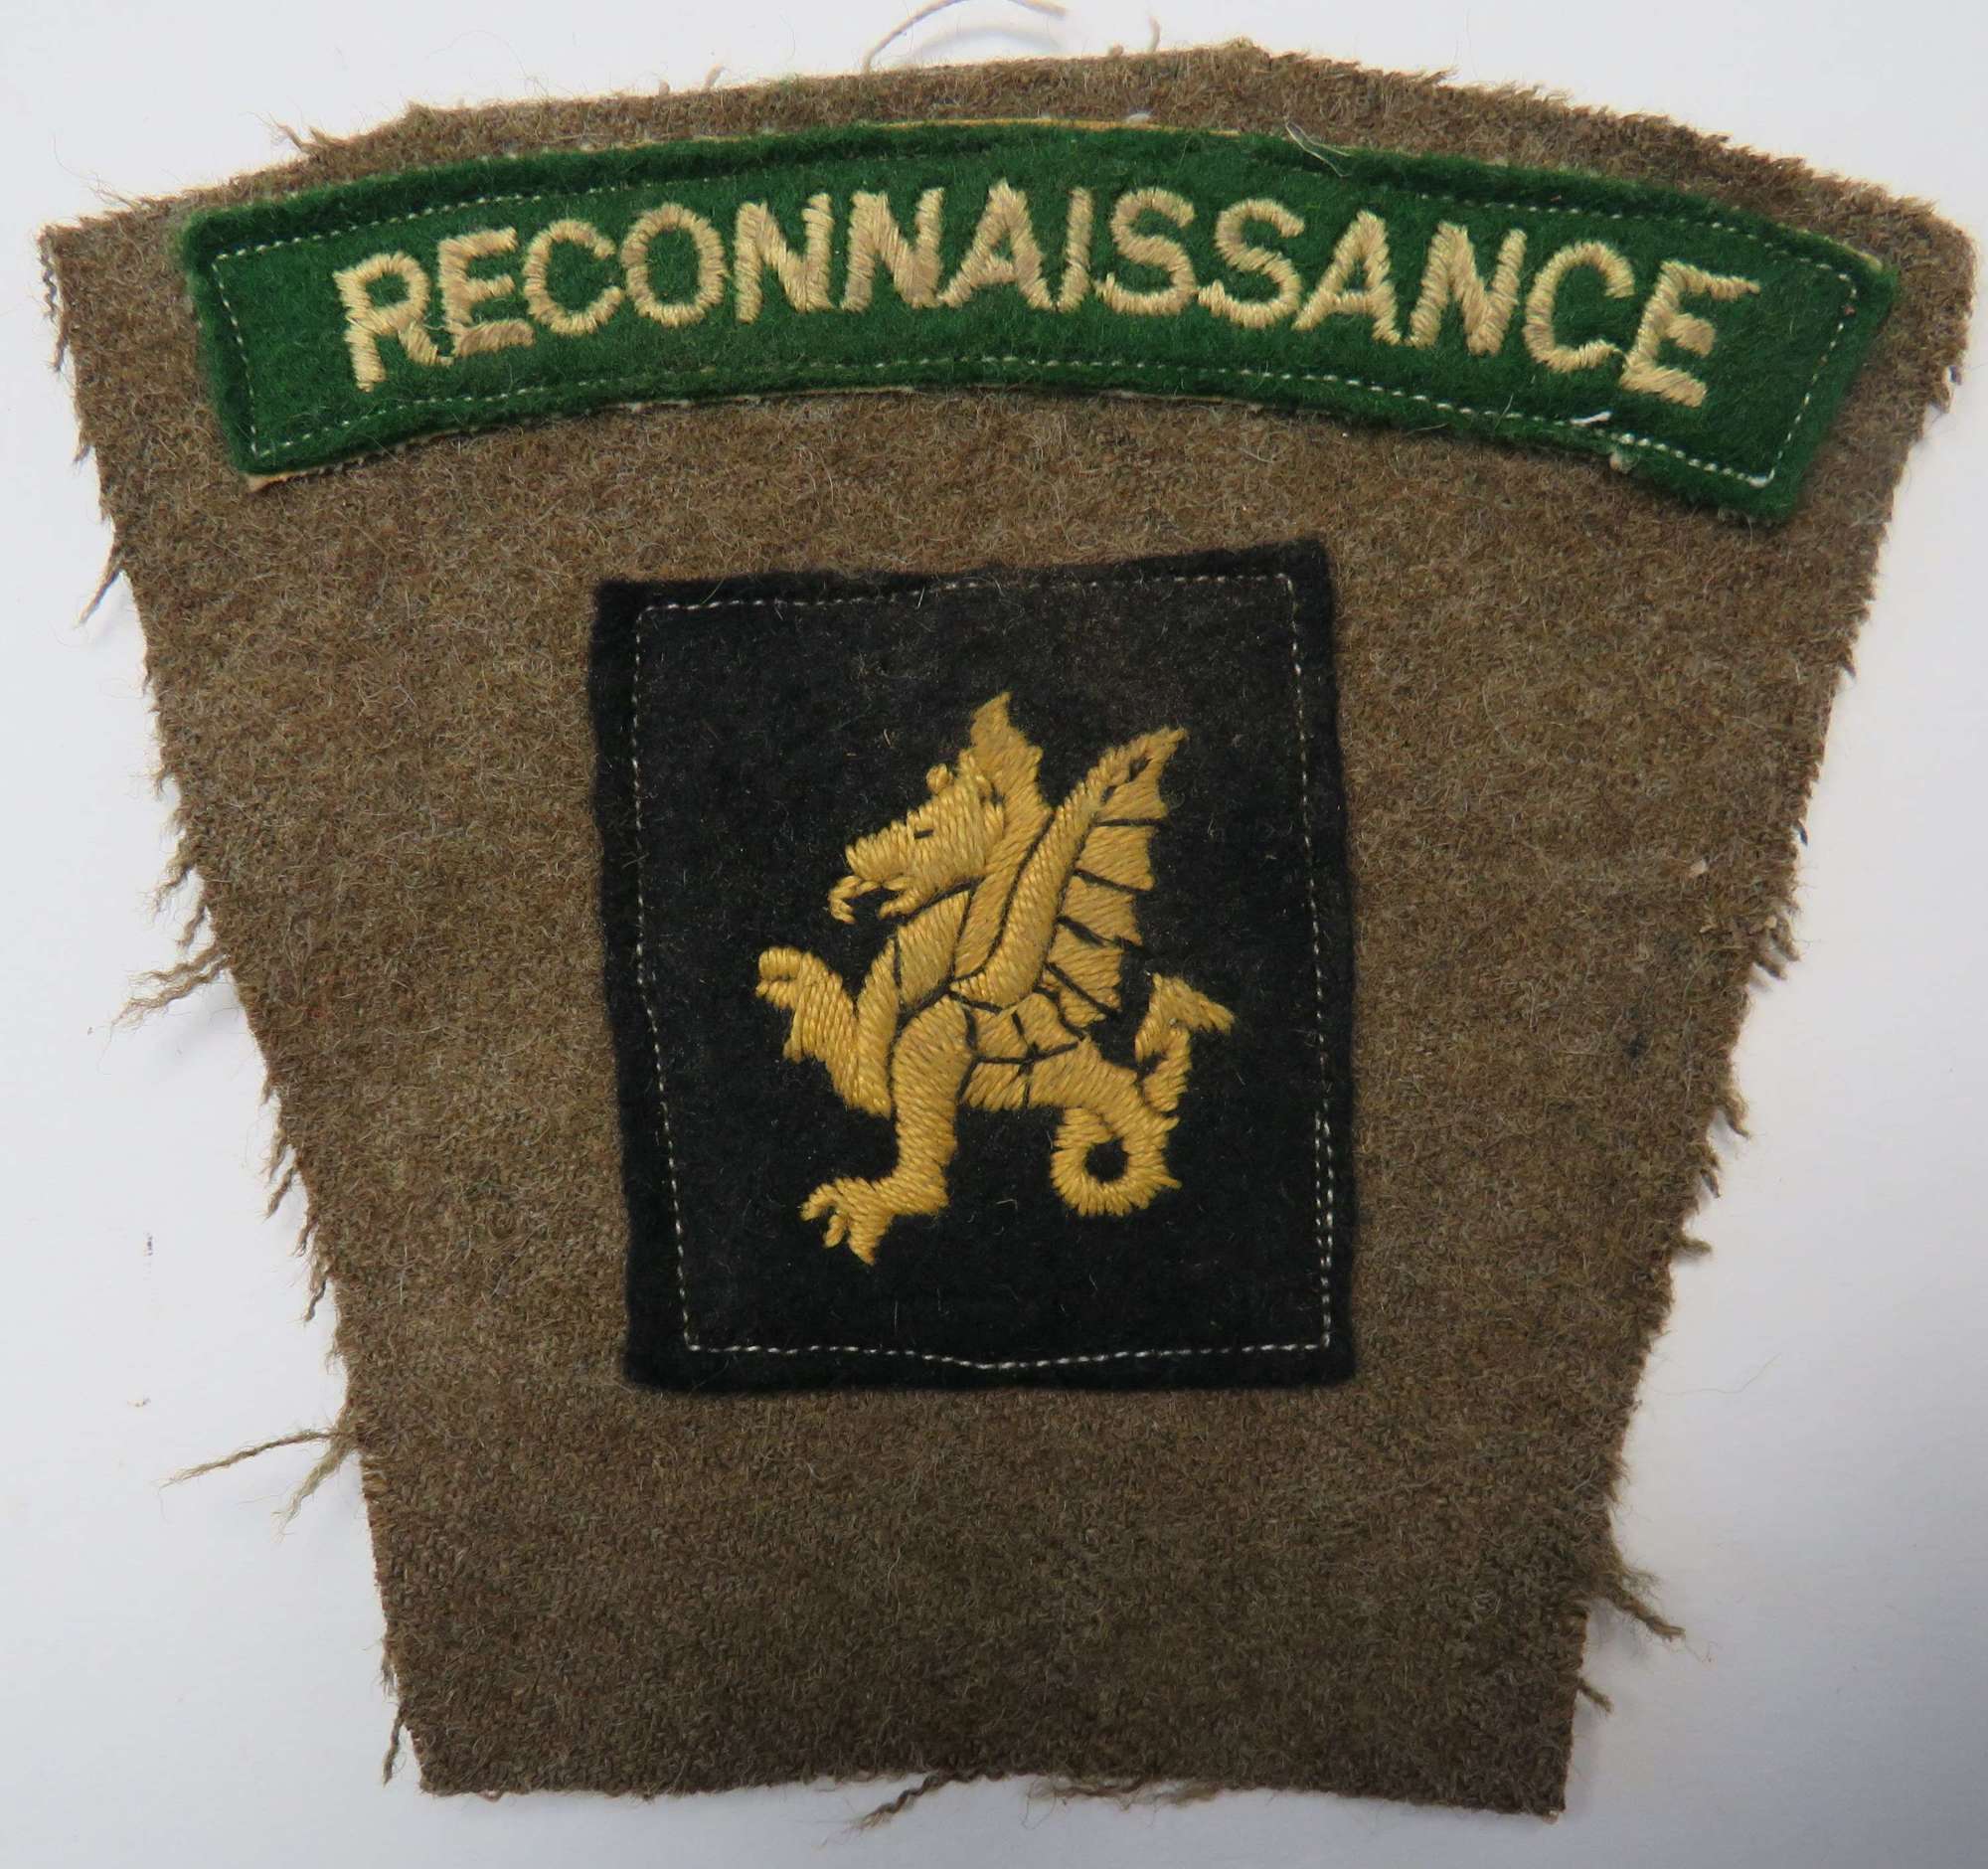 Reconnaissance Corps 43rd Division Battle Patch